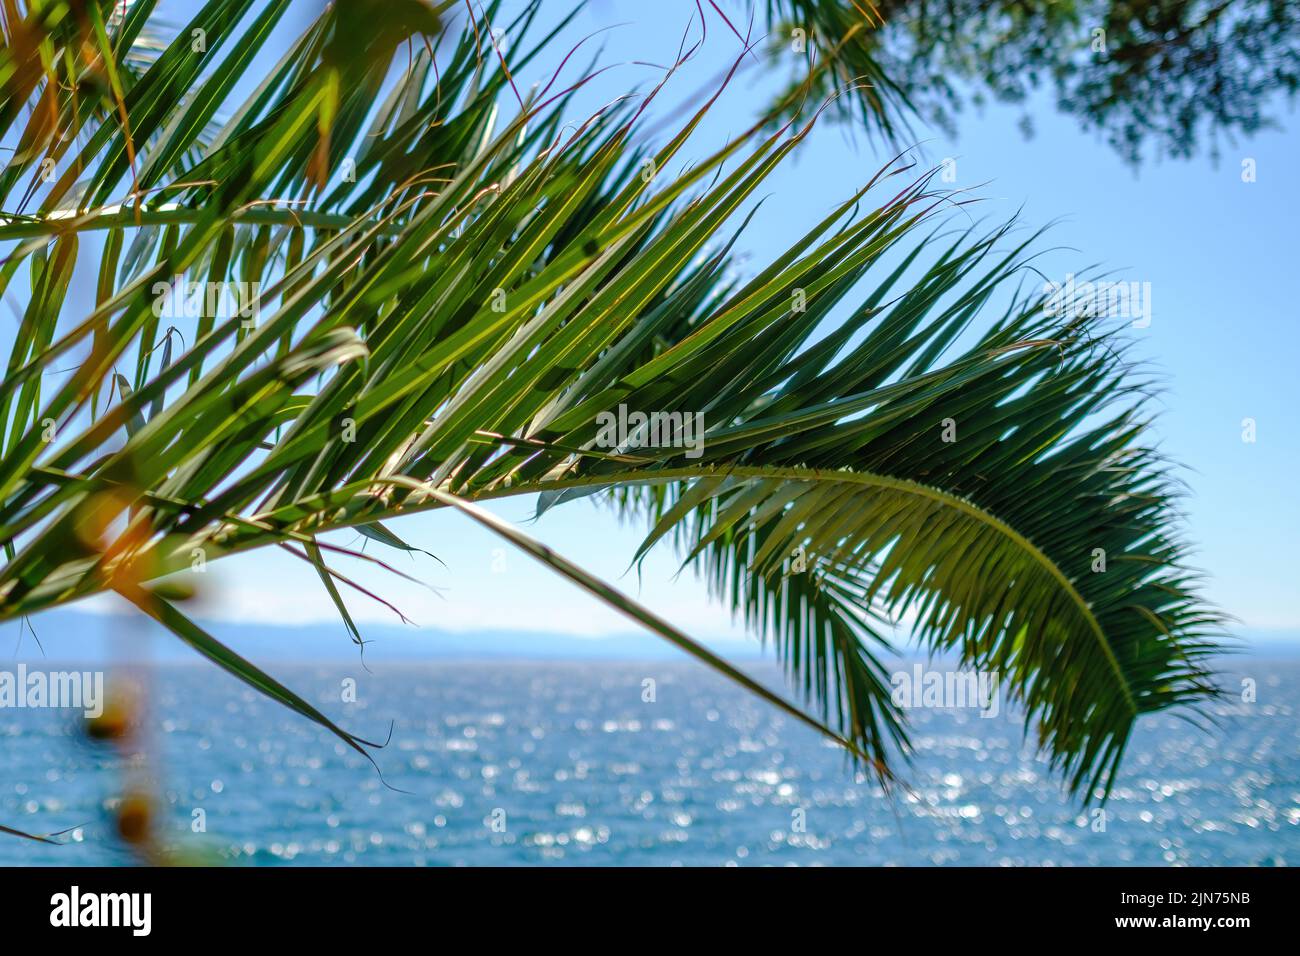 Grüne Palmenzweige wiegen im leichten Wind gegen die blaue Meereslandschaft. Tiefsee reflektiert klaren blauen Himmel. Wasser erregt die Aufmerksamkeit mit lebendigen Farben Stockfoto